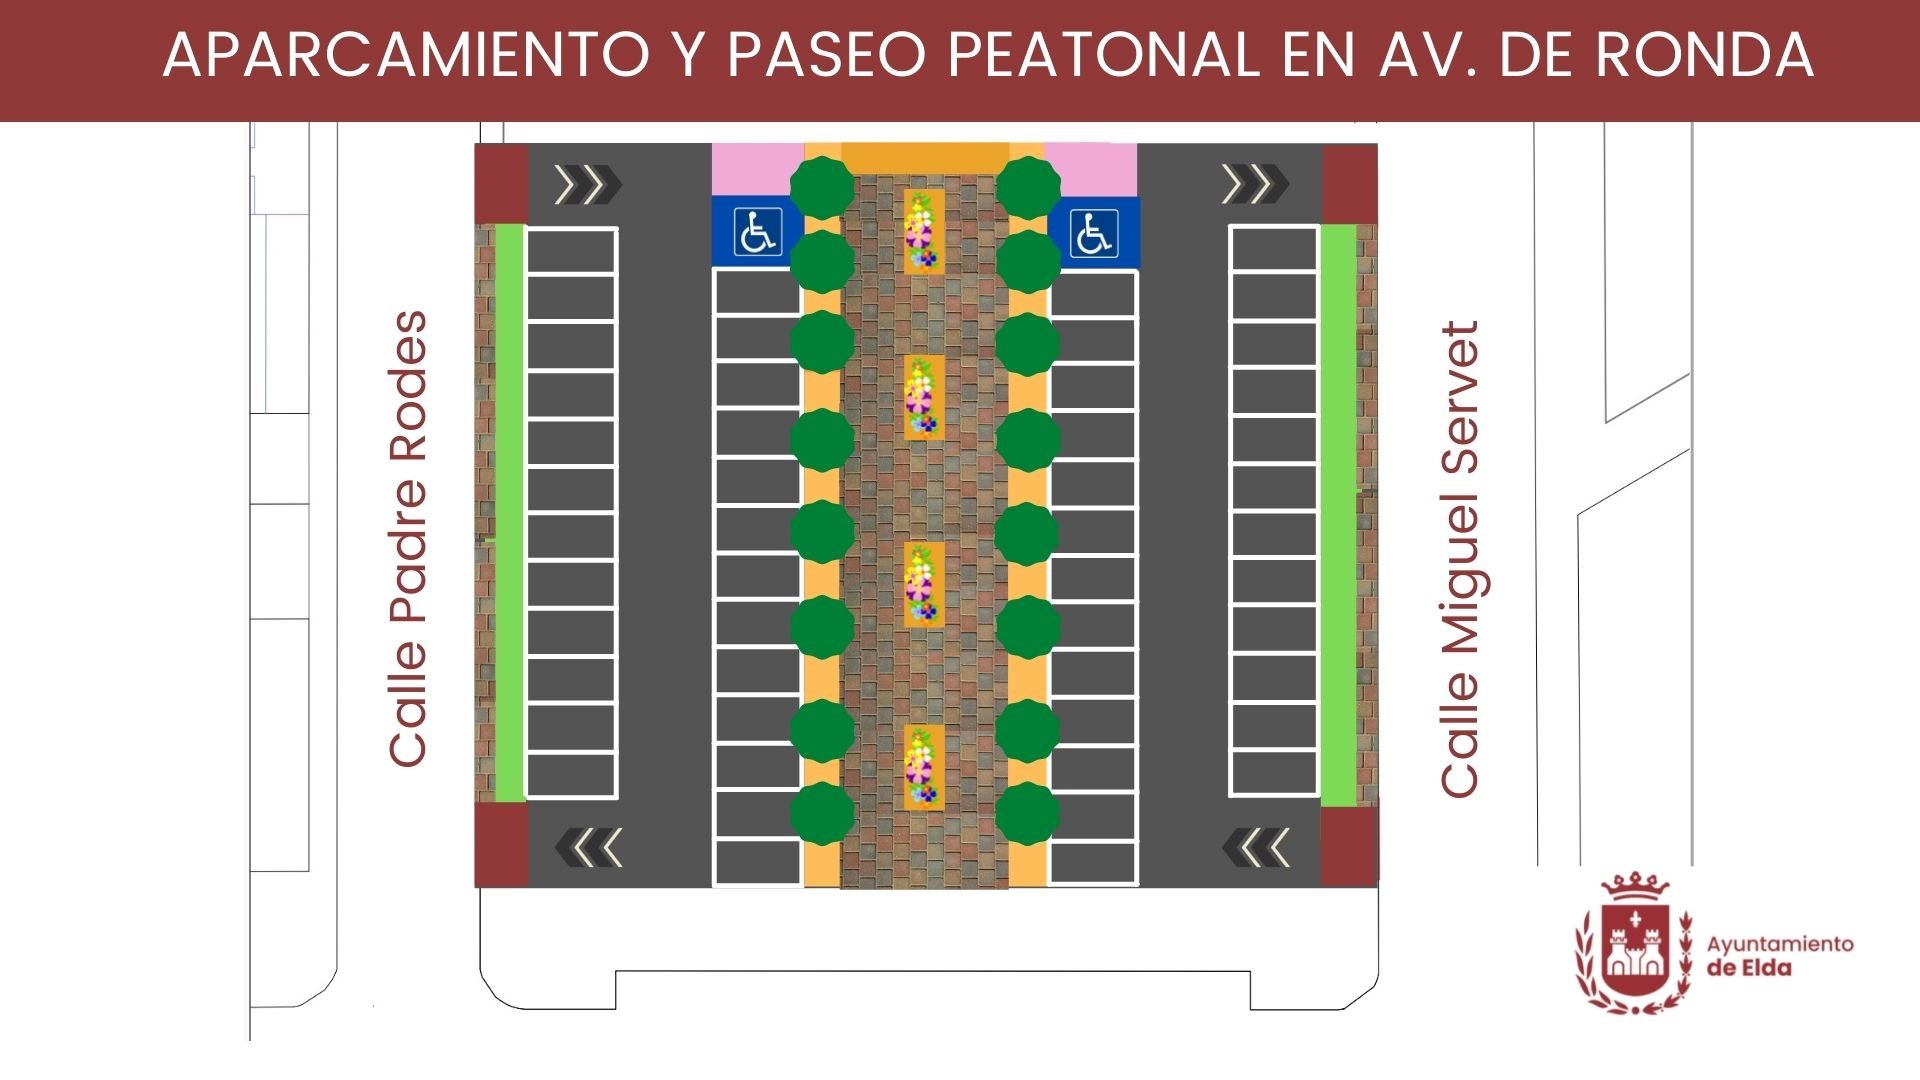 El Ayuntamiento de Elda construirá un aparcamiento público con paseo peatonal frente a la iglesia de San Pascual